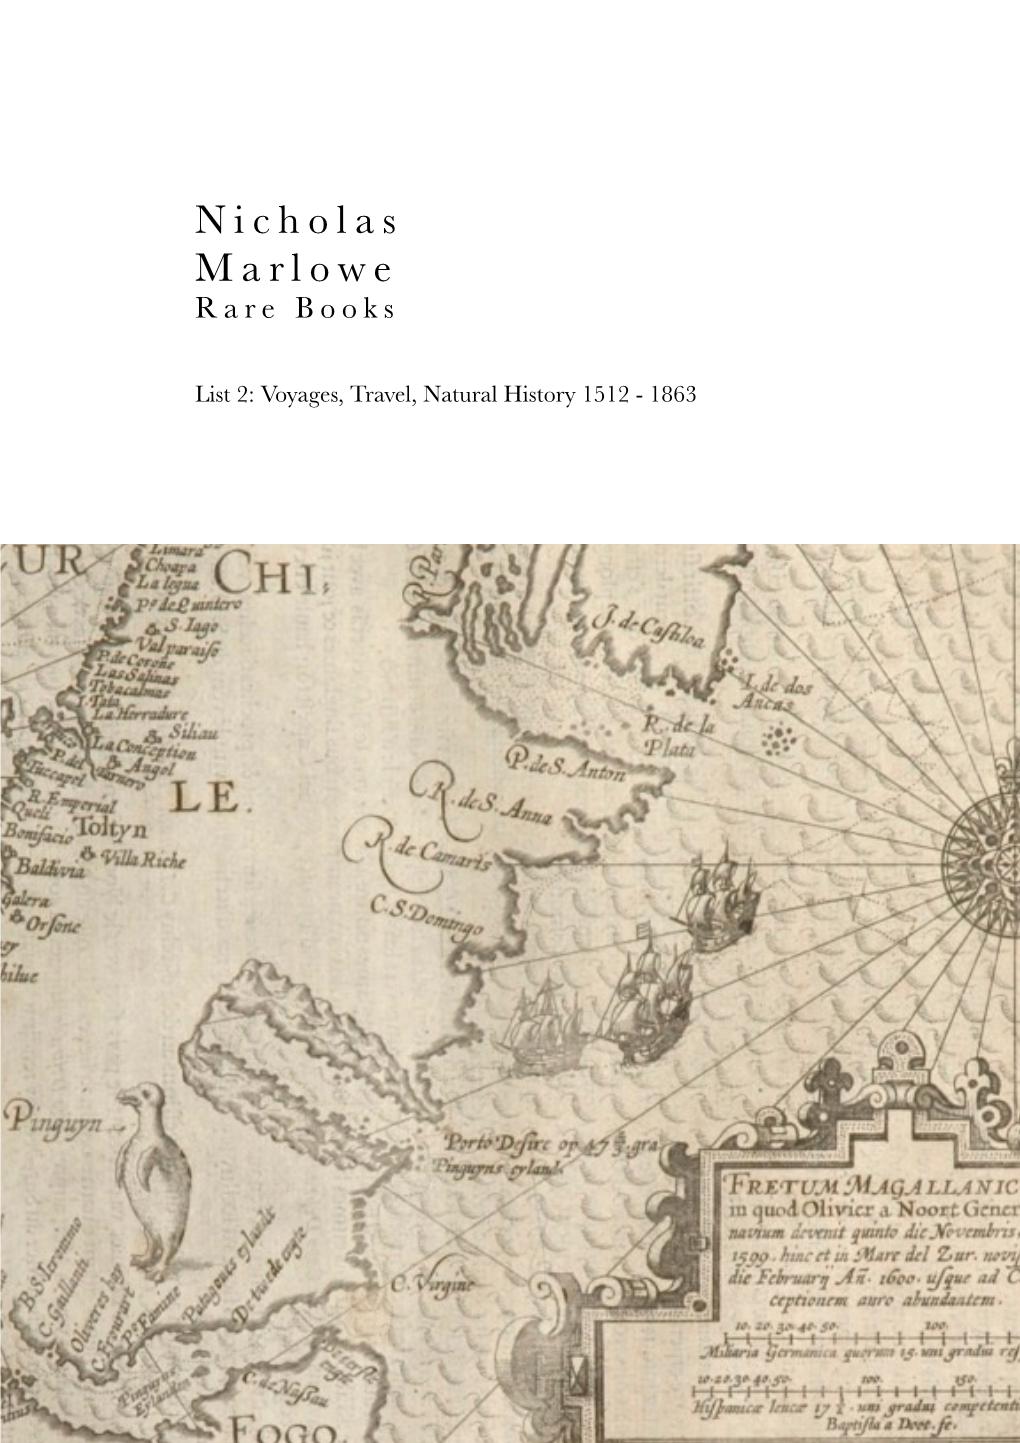 Nicholas Marlowe List 2 Voyages